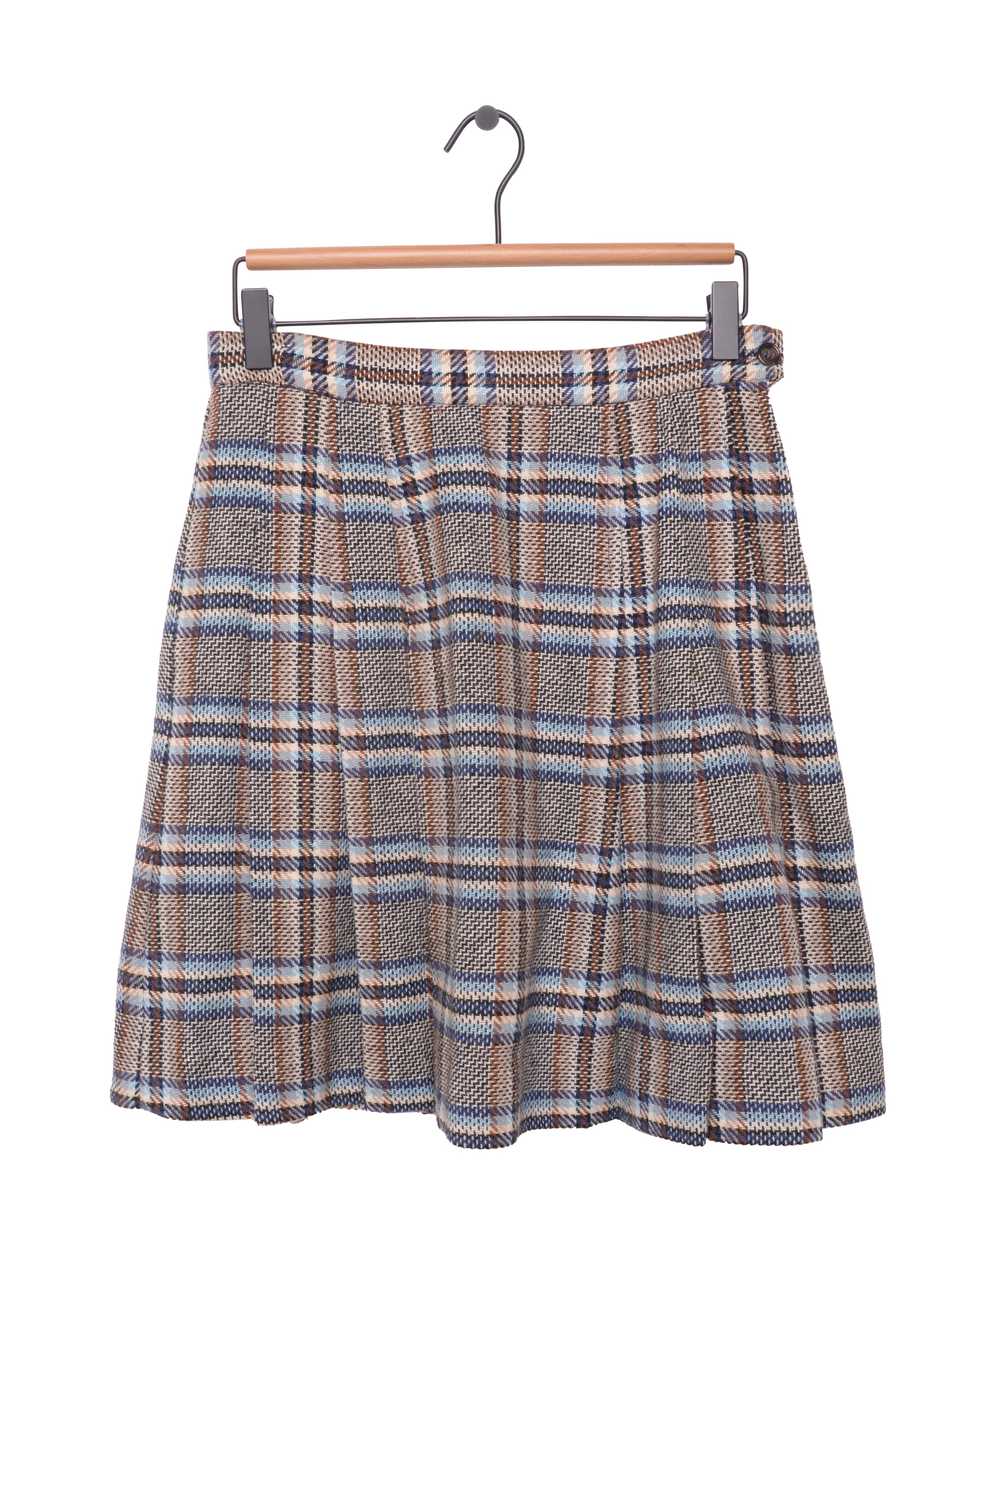 Plaid Wool Mini Skirt - image 1